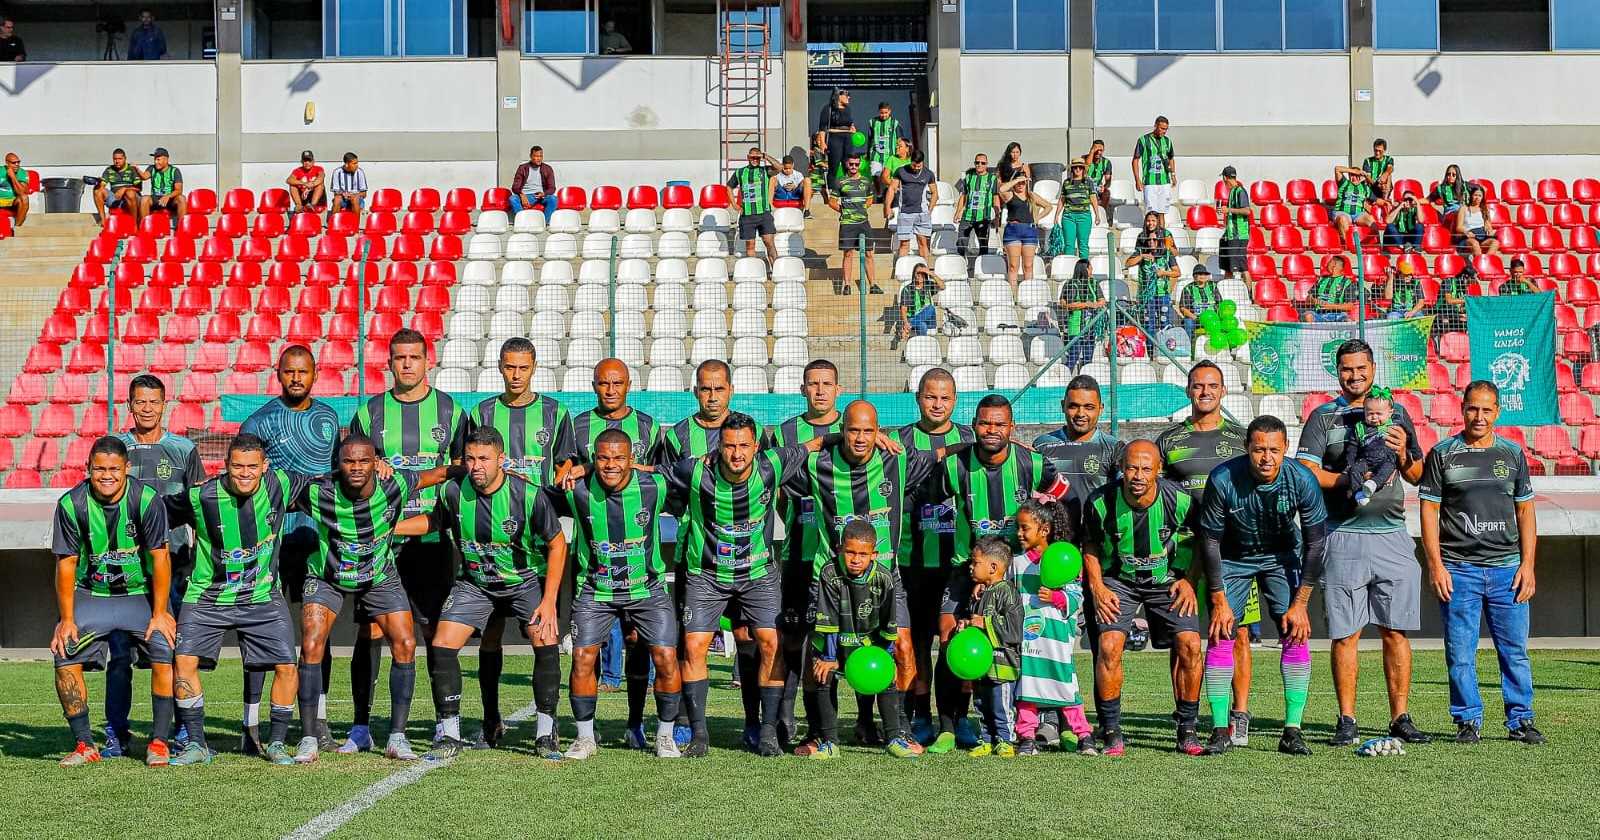 Sete Lagoas - Prefeitura Municipal - Campeonato Municipal de Futebol Amador  começa animado e promete grandes jogos também na 2ª rodada